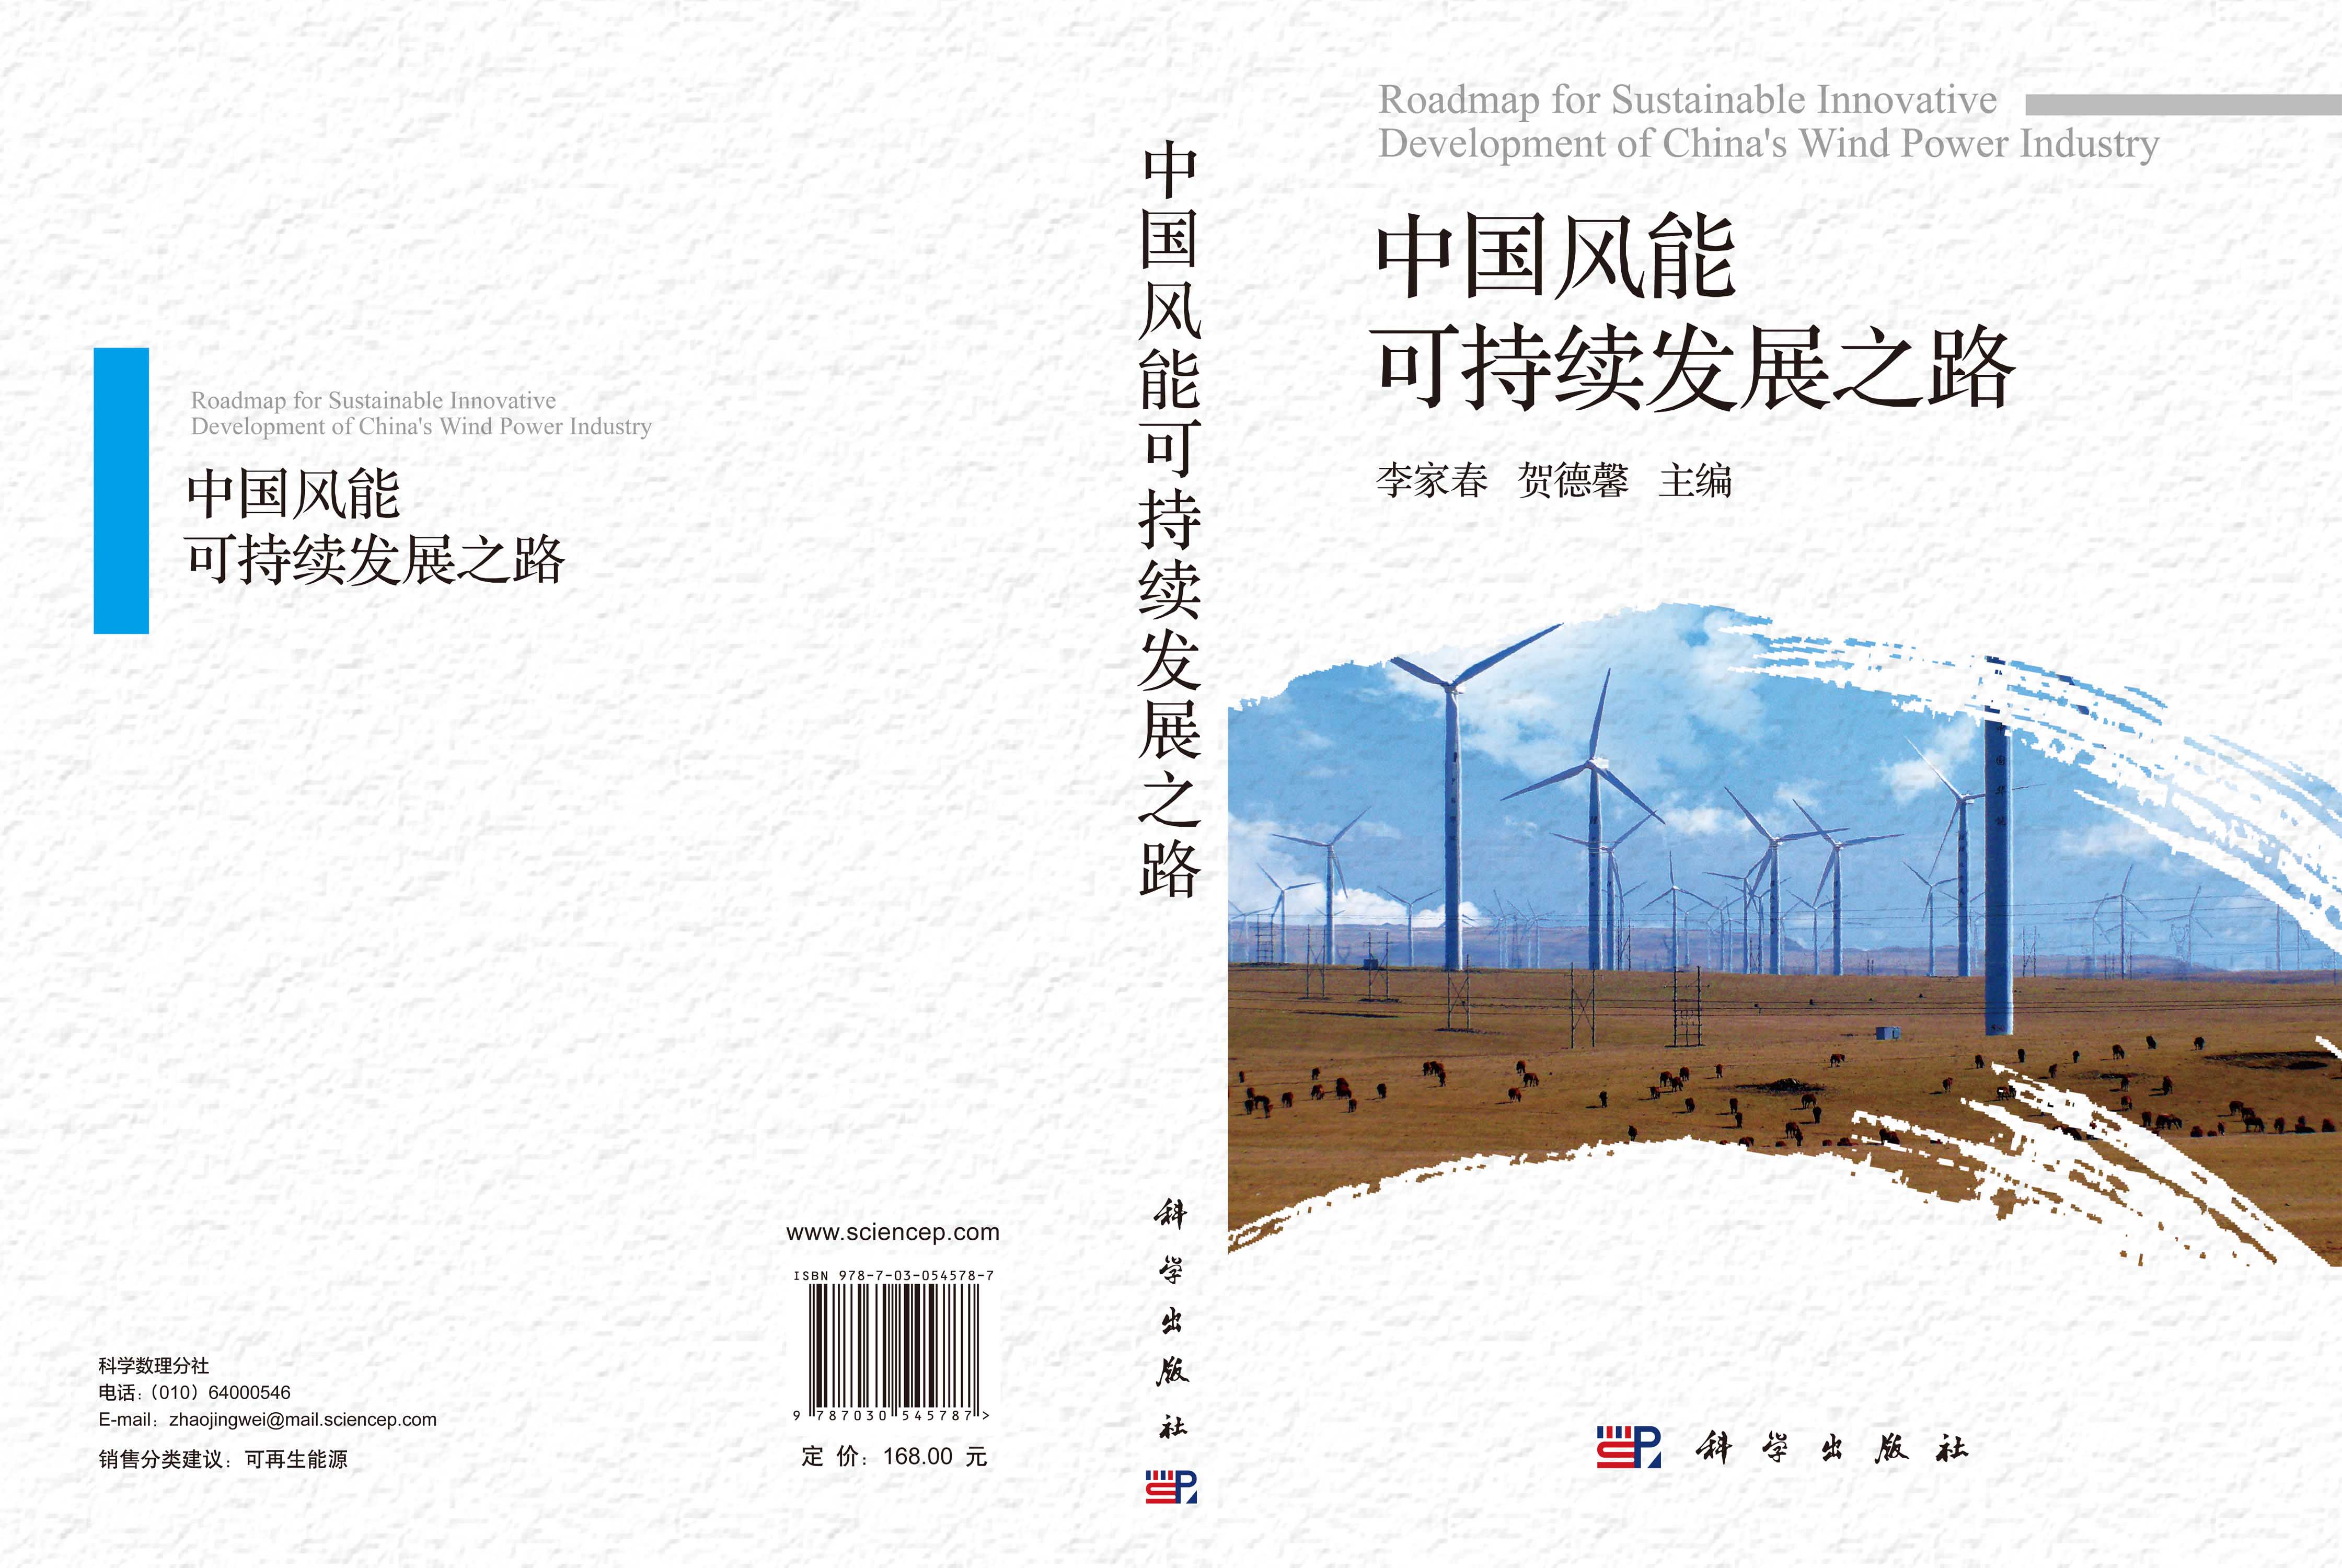 中国风能可持续发展之路